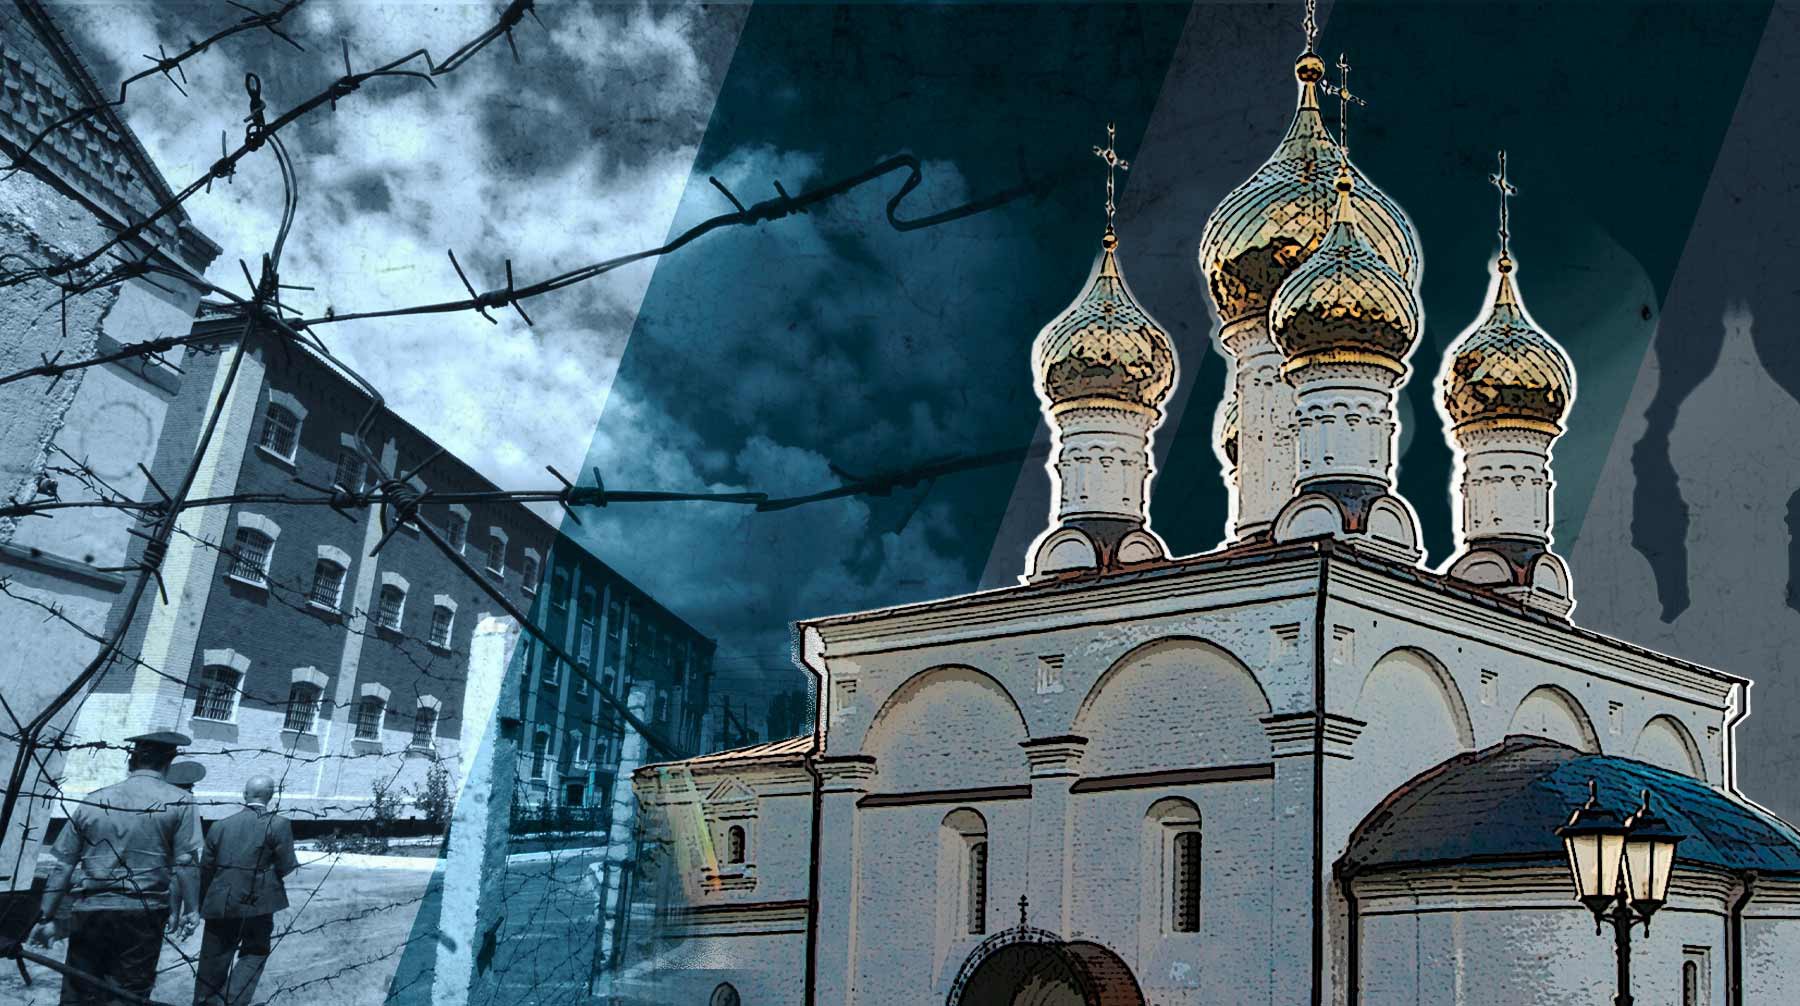 Dailystorm - В РПЦ поддержали священника, заявившего, что изнасилованный человек может попасть в ад, а преступник — в рай